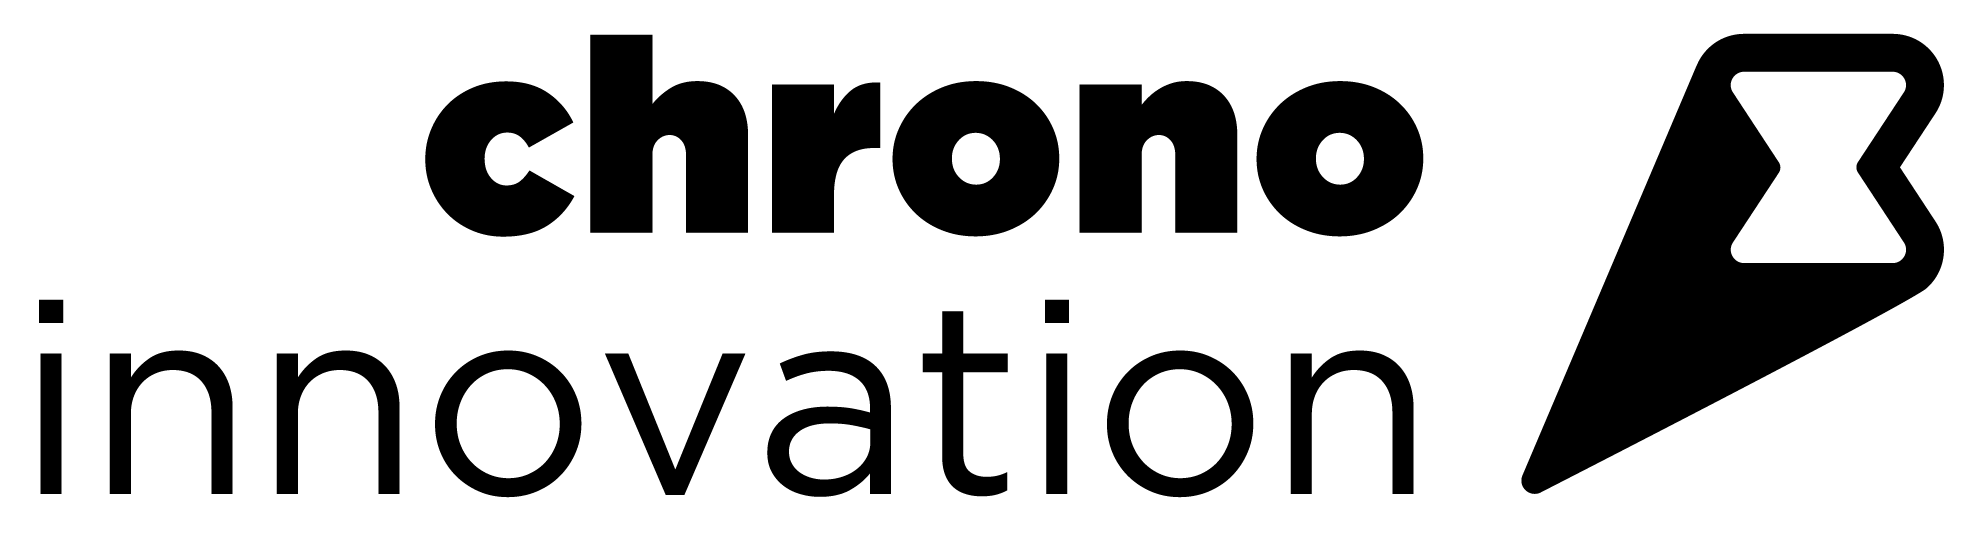 chronoinnovation-logo